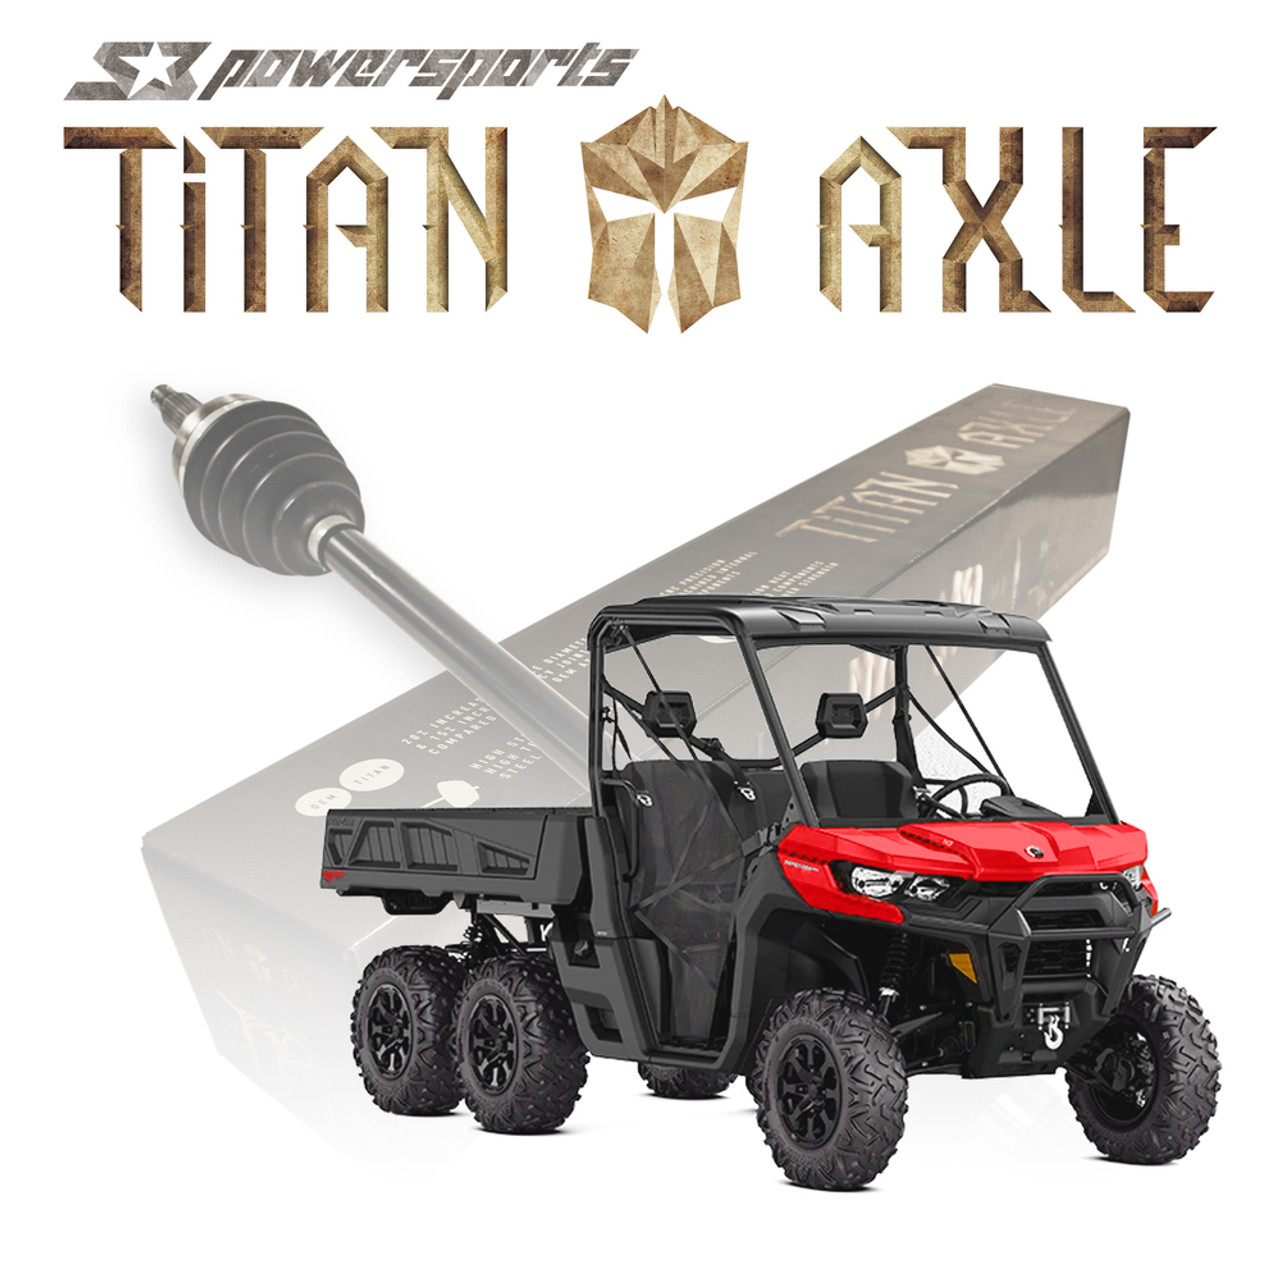 Titan Can-Am Defender 6X6 Axles